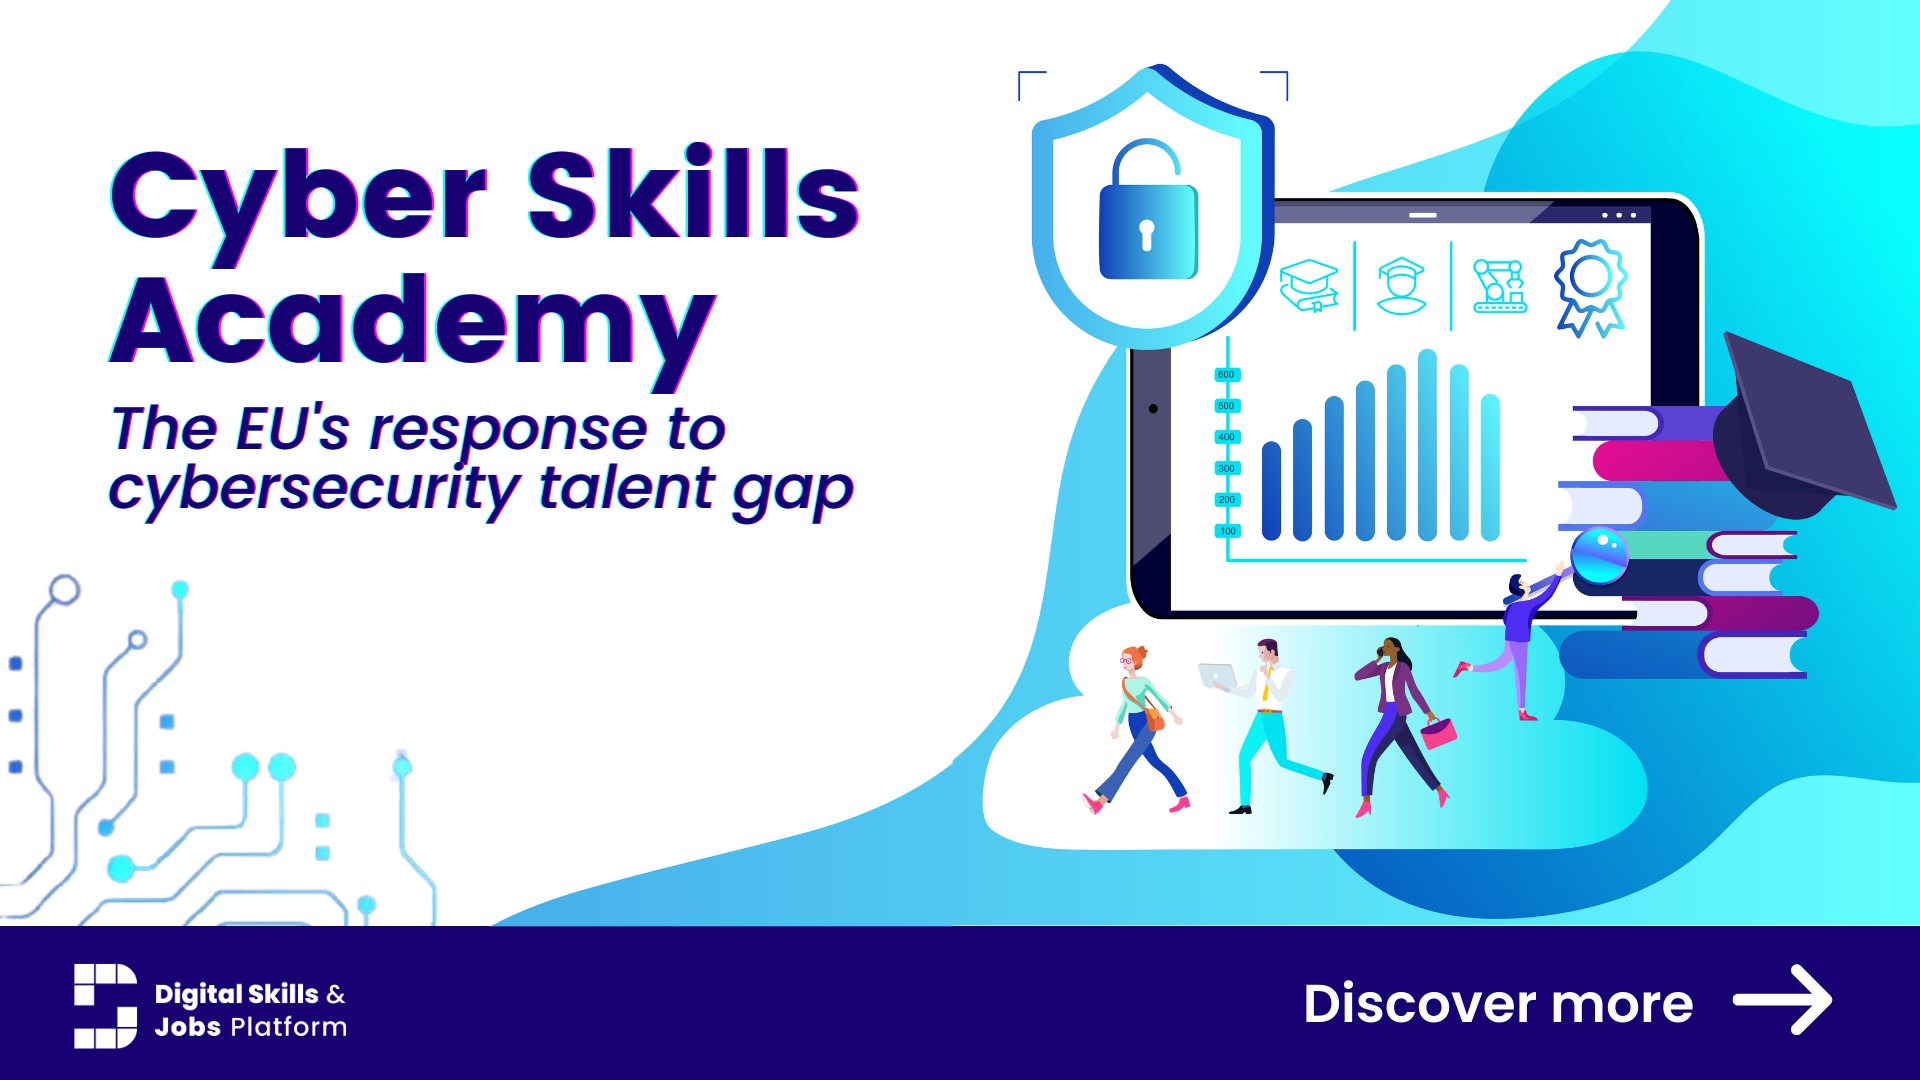 Visuel de promotion de la Cyber Skills Academy avec un sous-titre «La réponse de l’UE au déficit de talents en matière de cybersécurité»